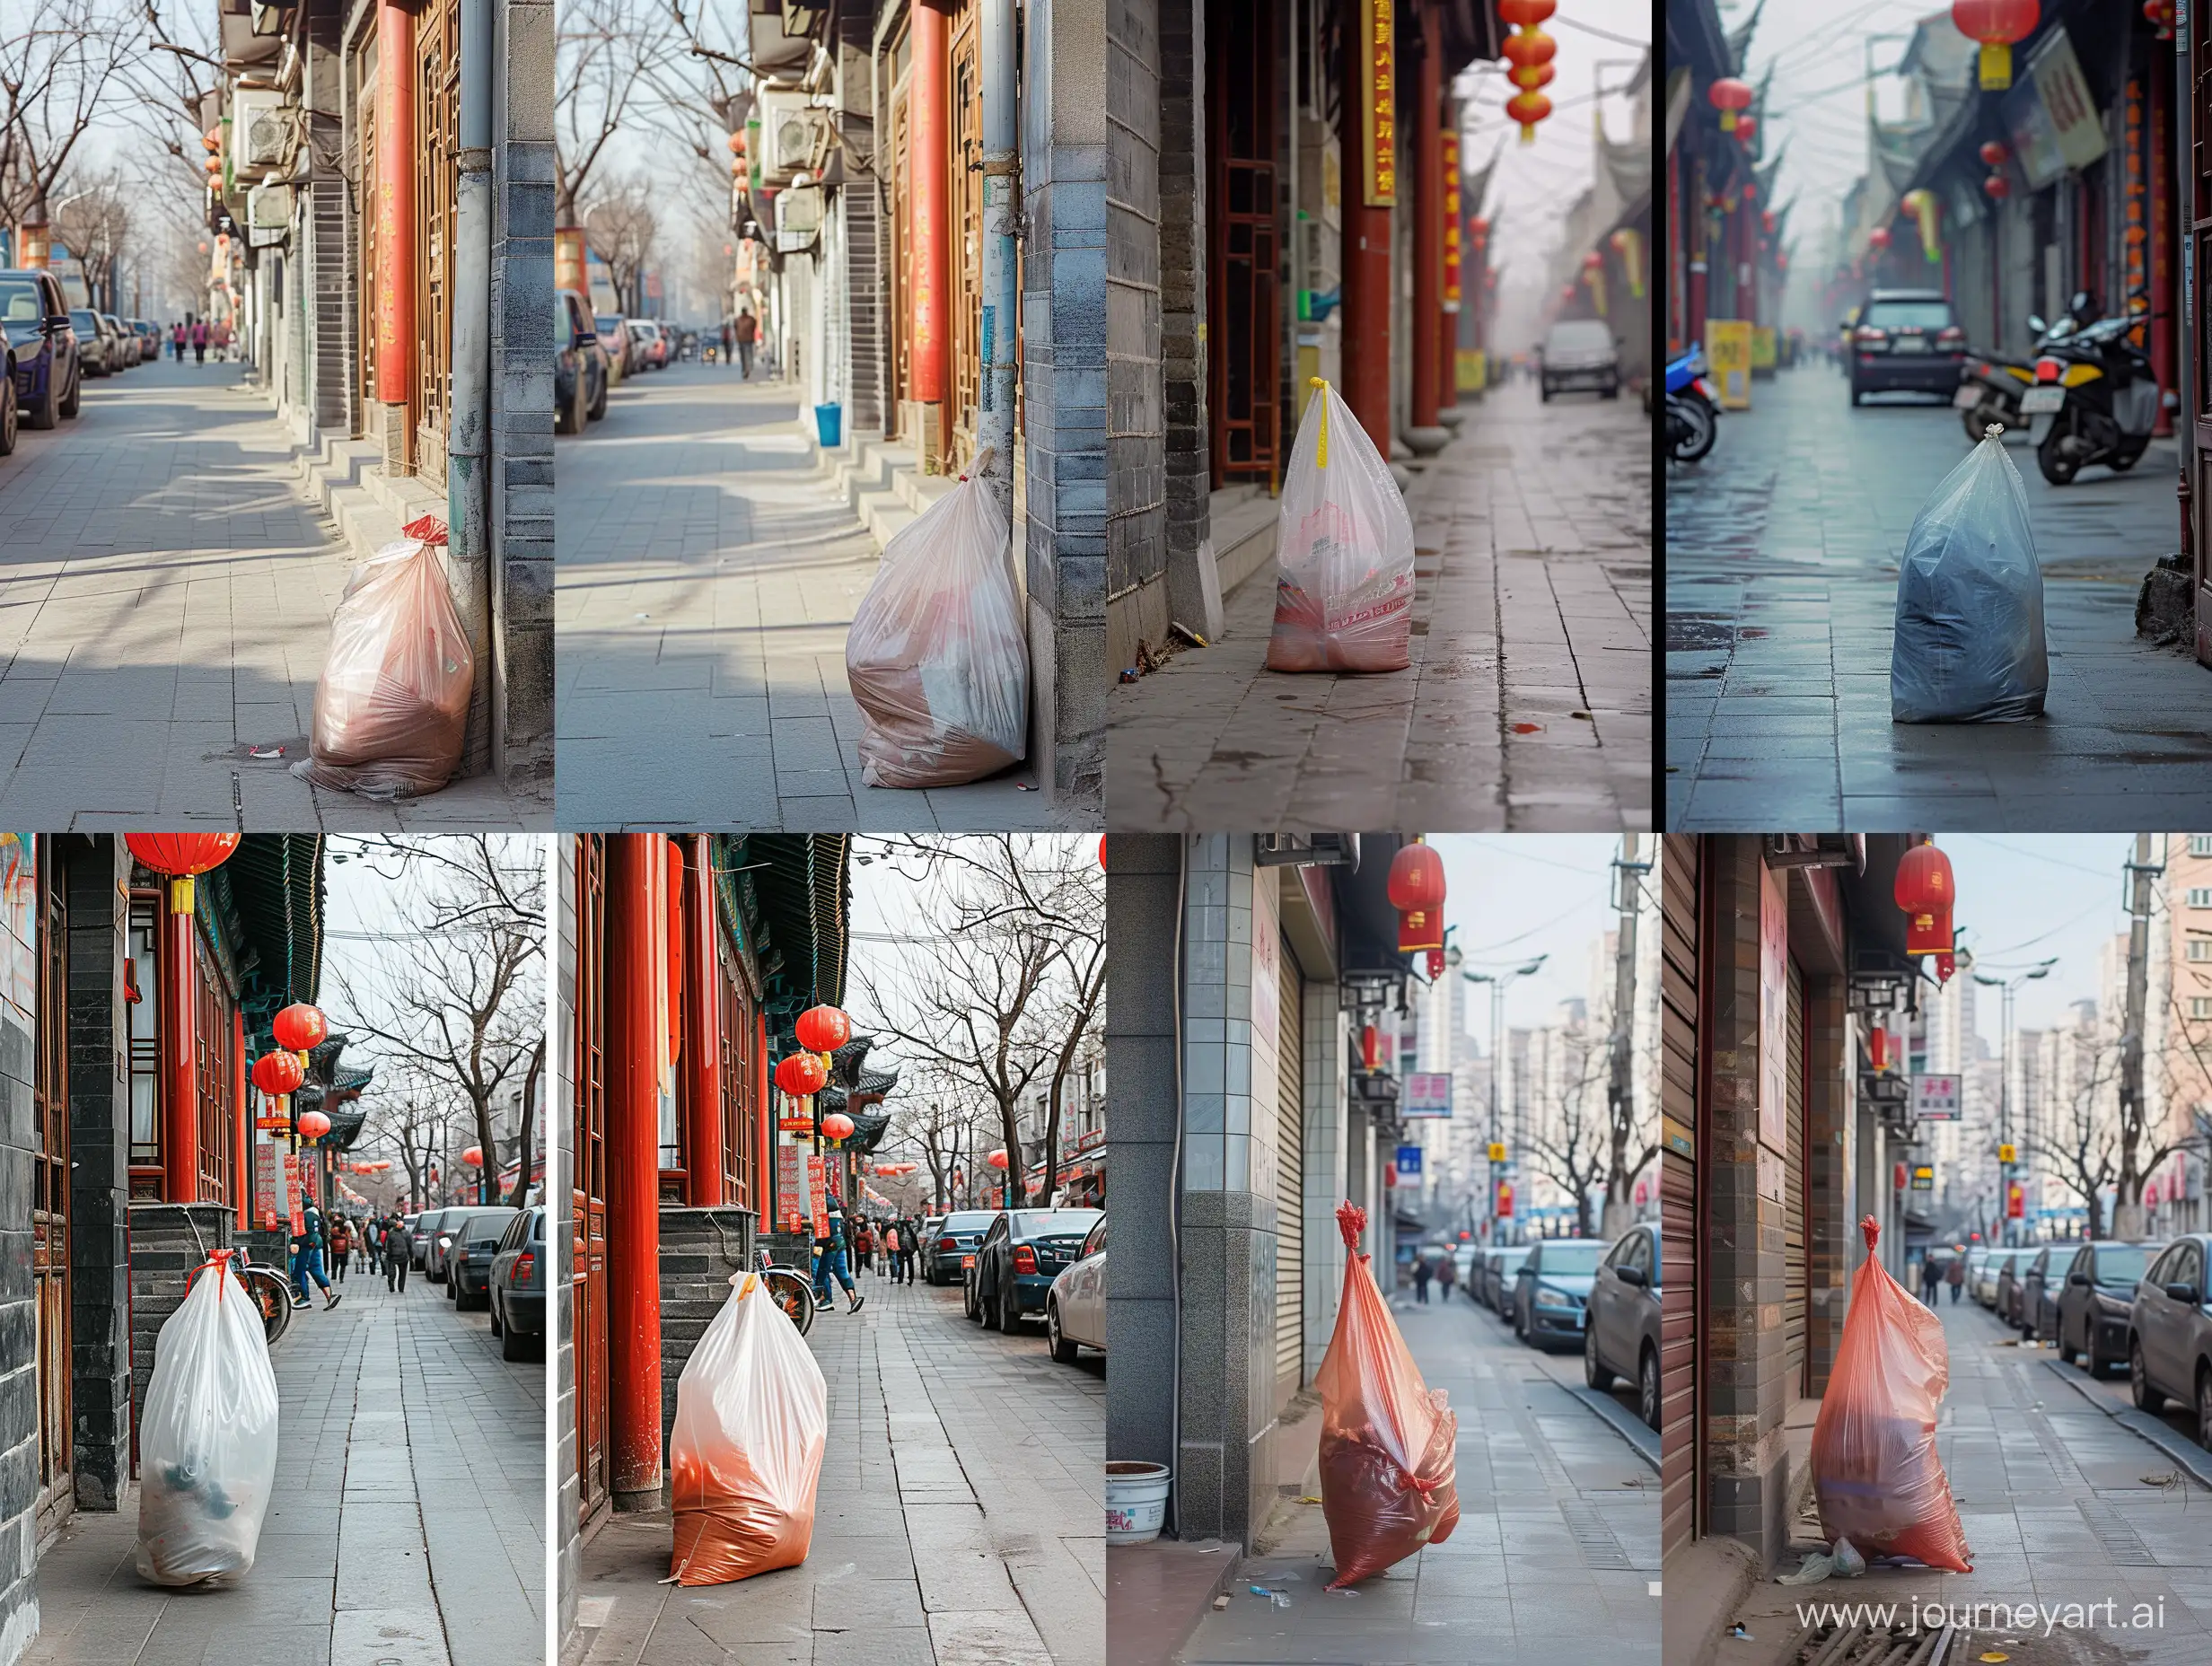 请生成两张中国街道图片，画面大部分是人行道，一张有一个塑料袋，一张没有，请确保背景是一样的